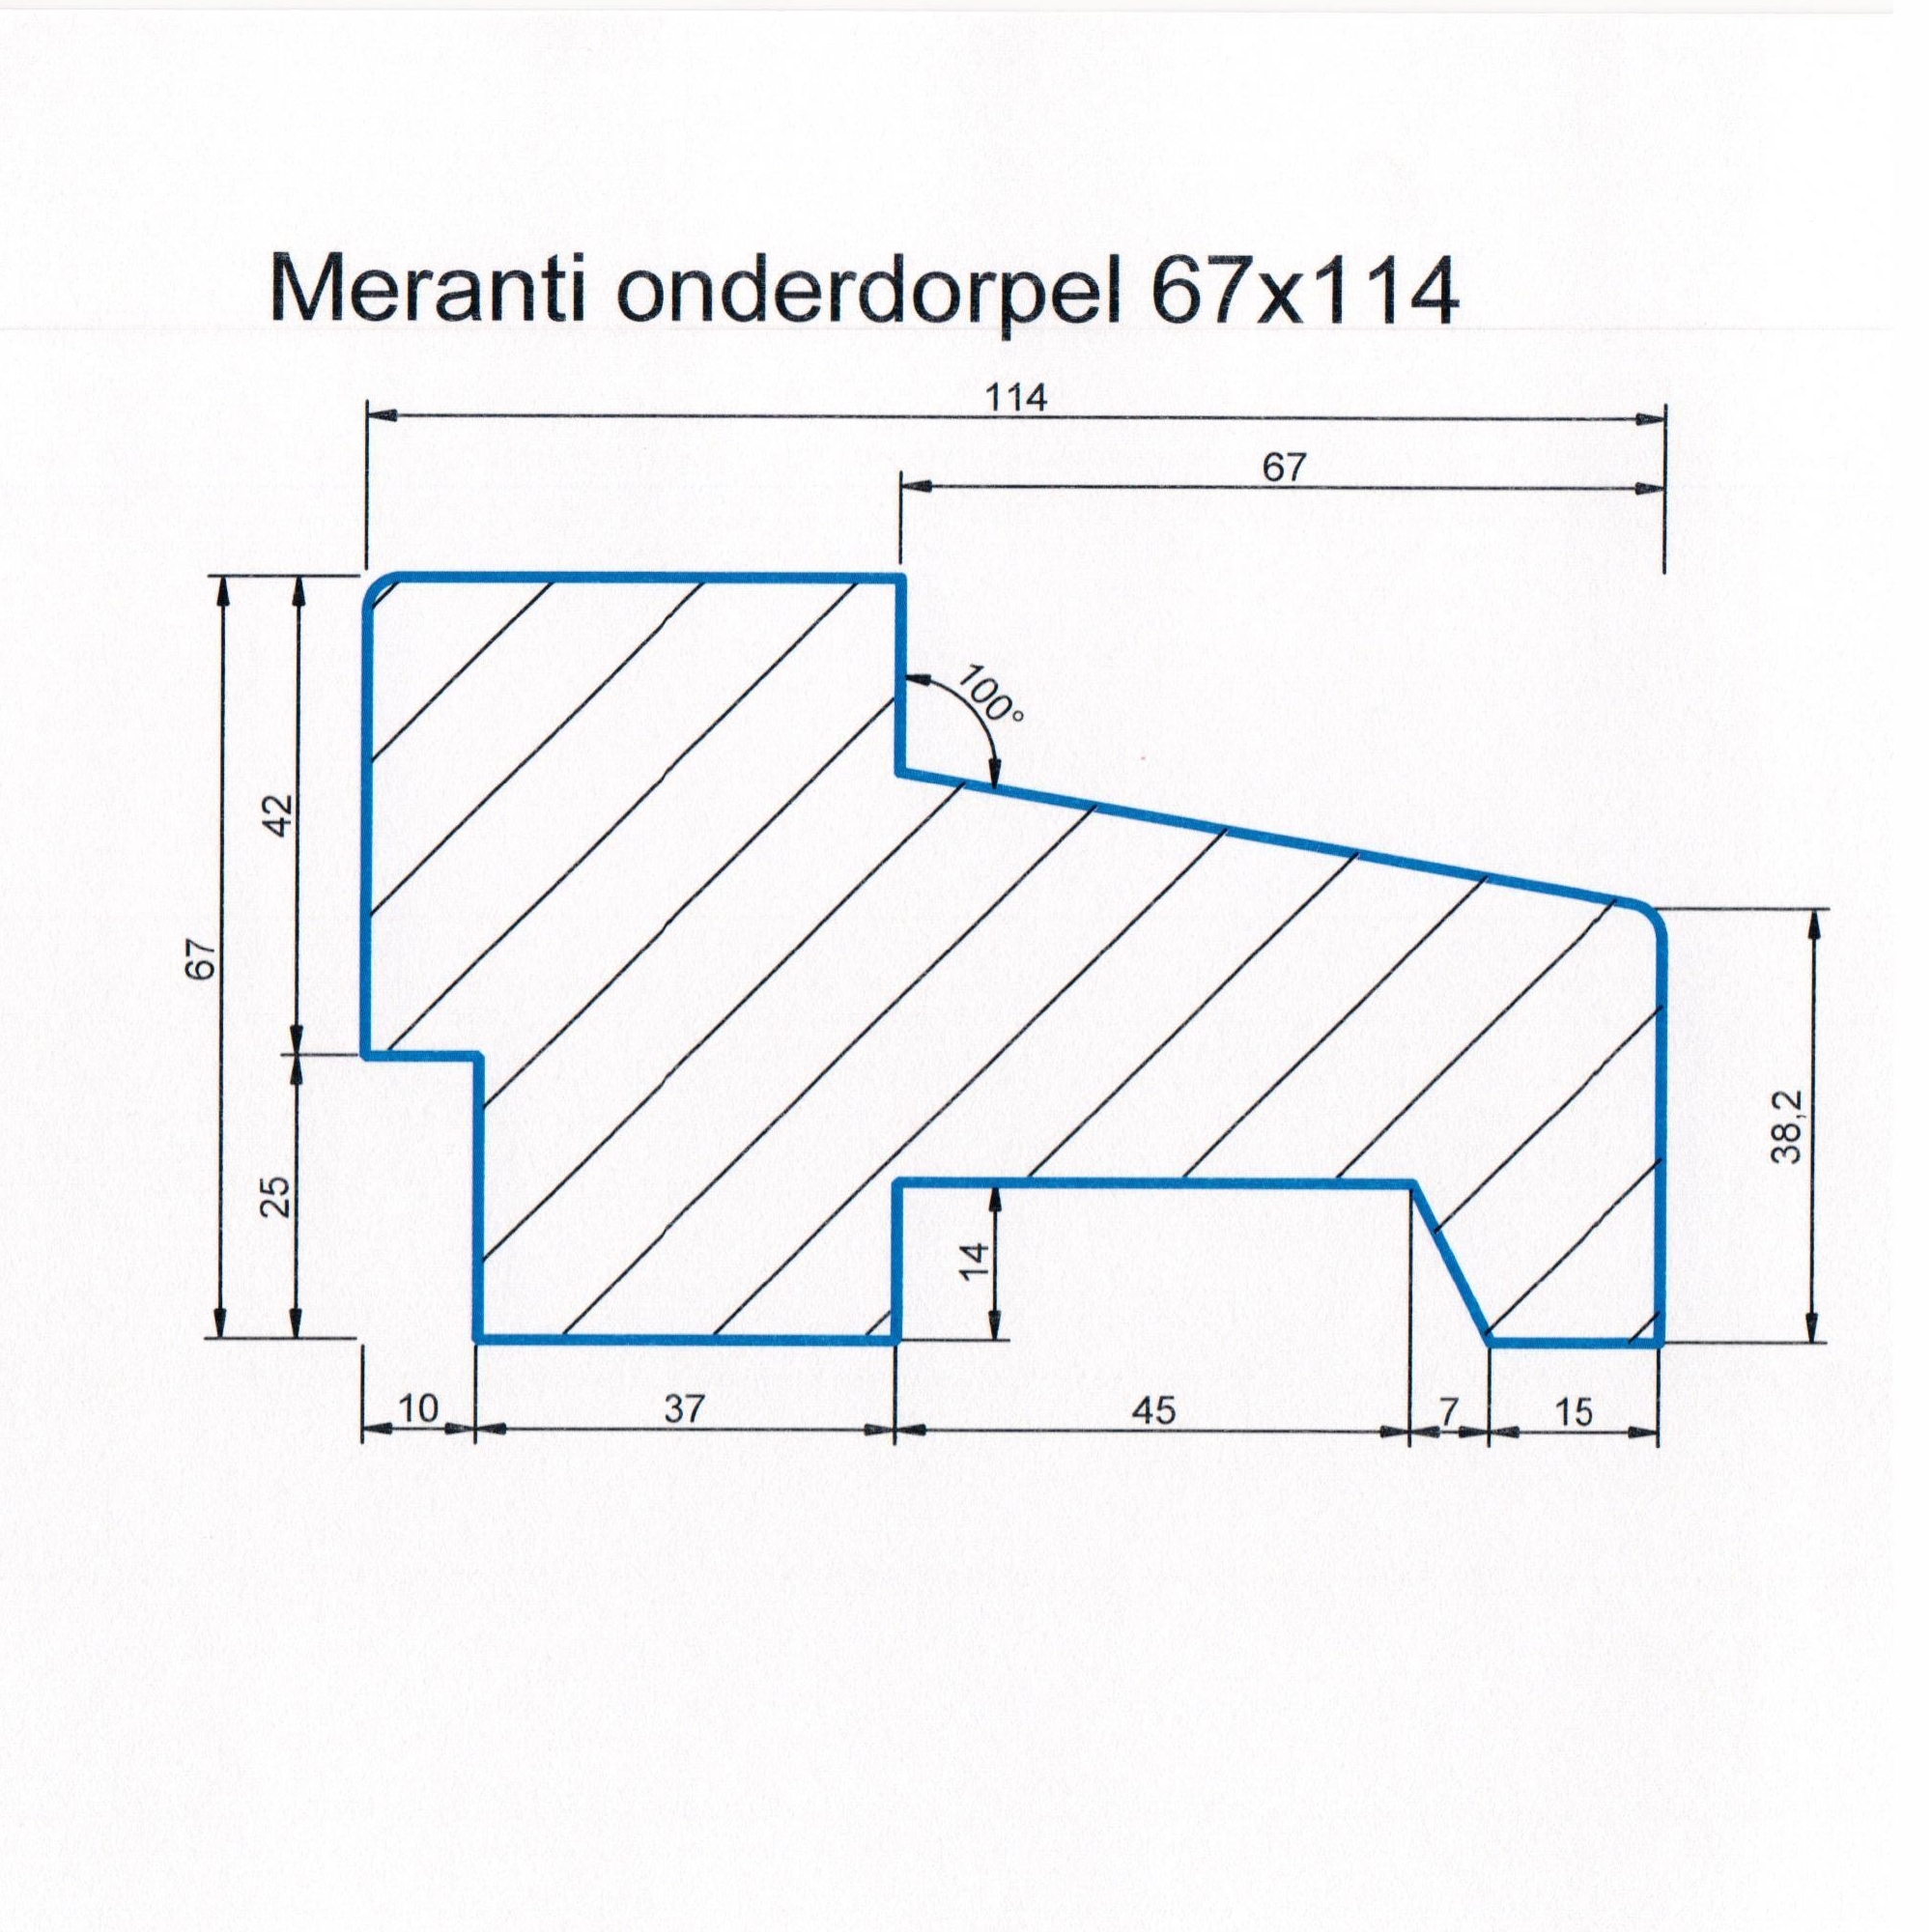 Meranti 67x114 kozijnhout onderdorpel L=4300 mm